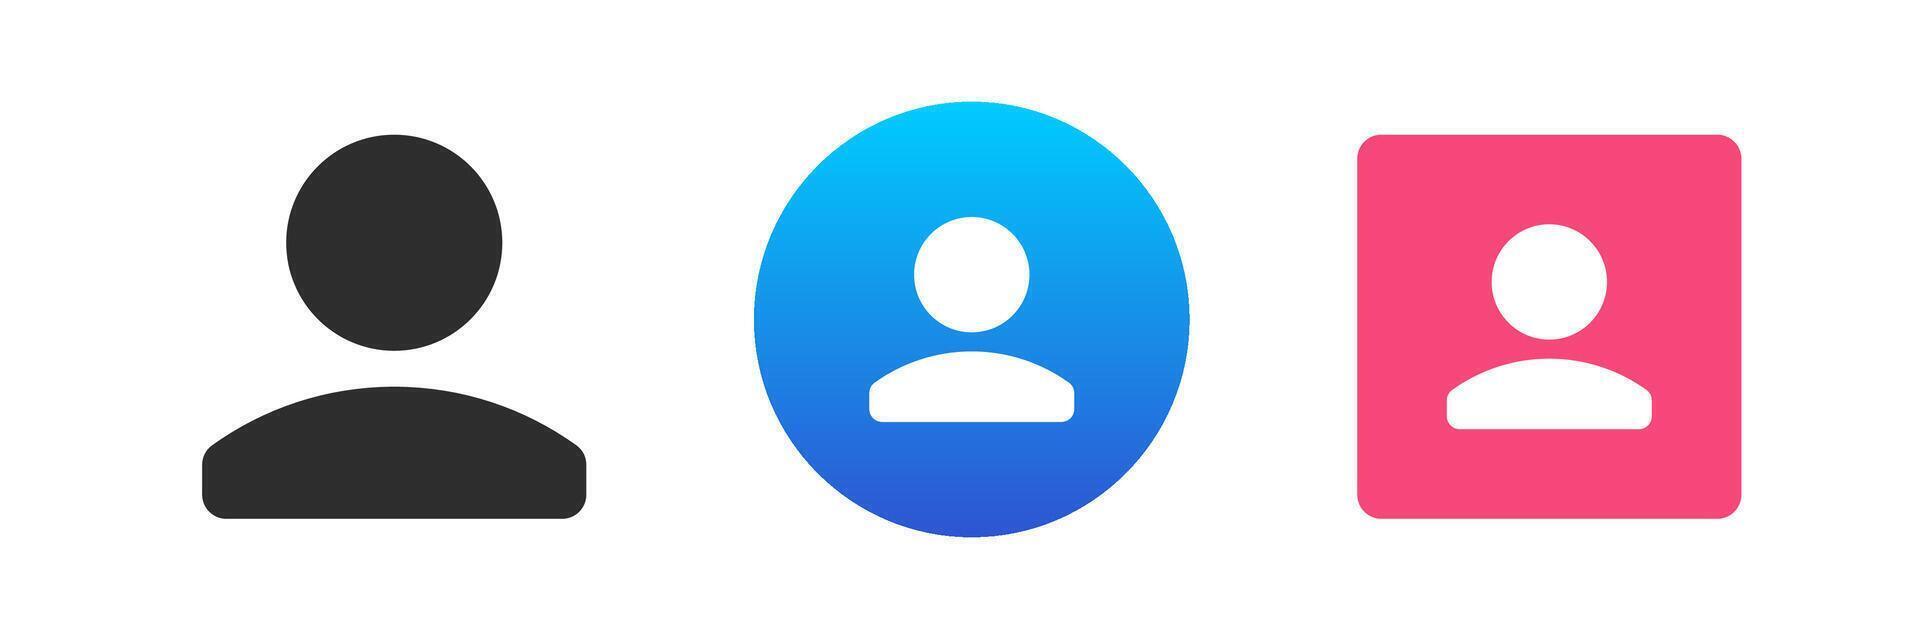 användare medlem Kontakt avatar social nätverk profil personlig information ikon uppsättning platt vektor